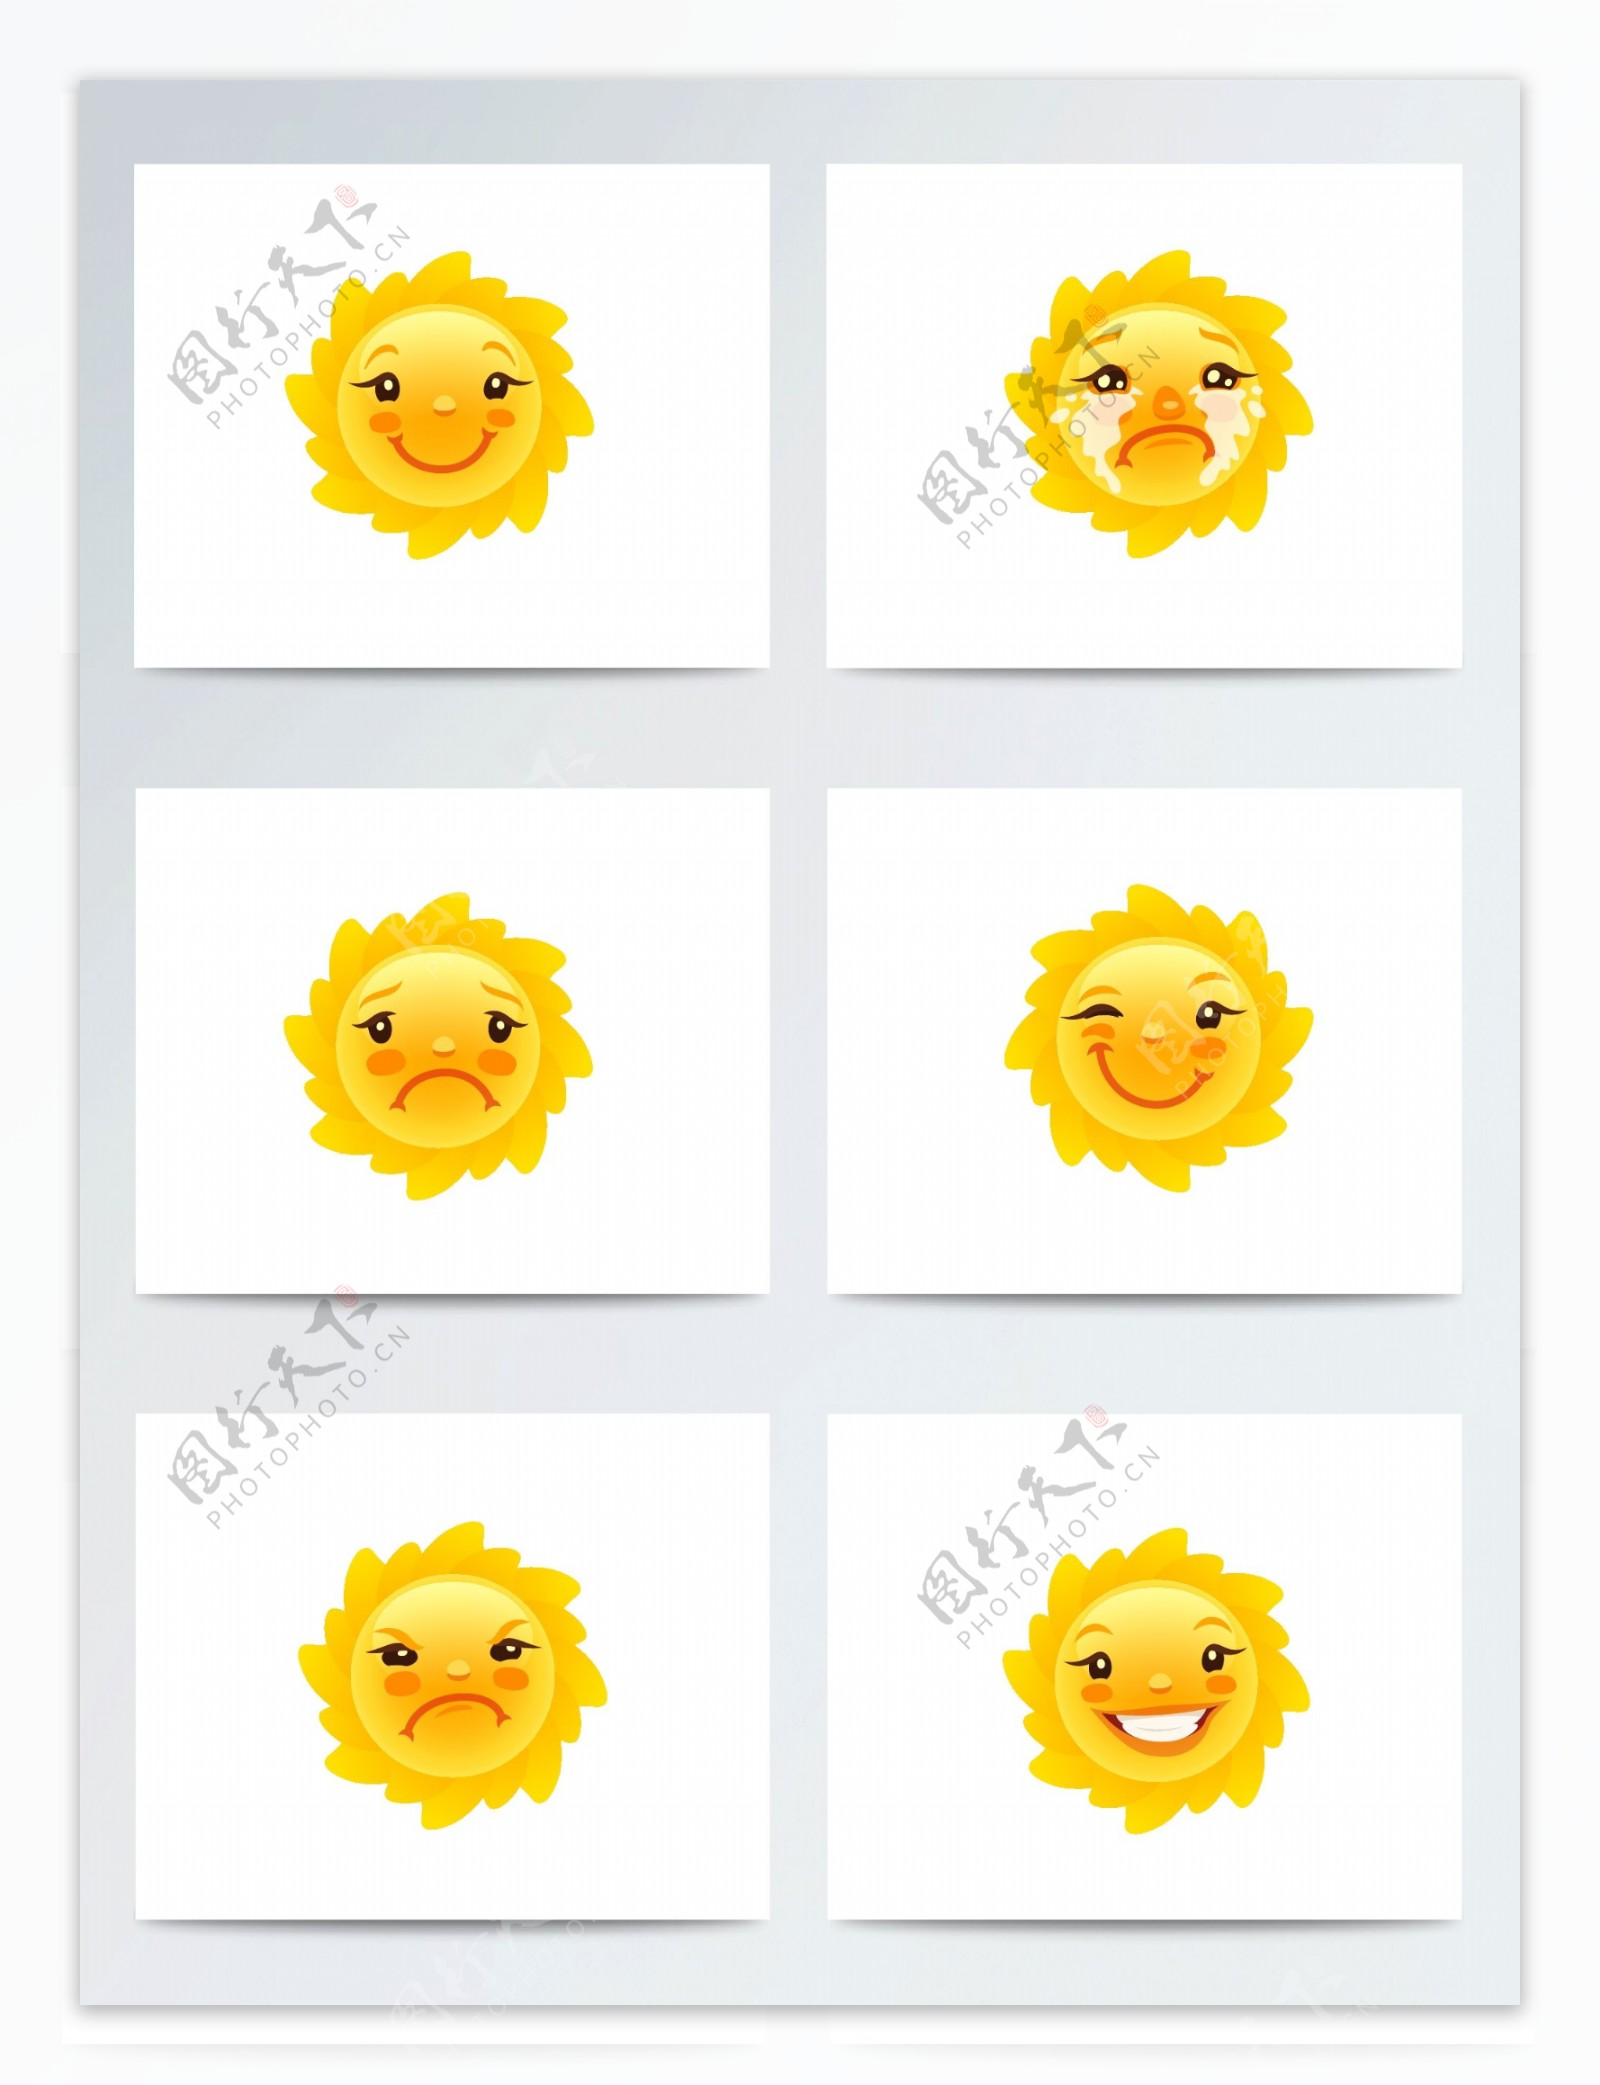 太阳表情包可爱卡通ai矢量元素